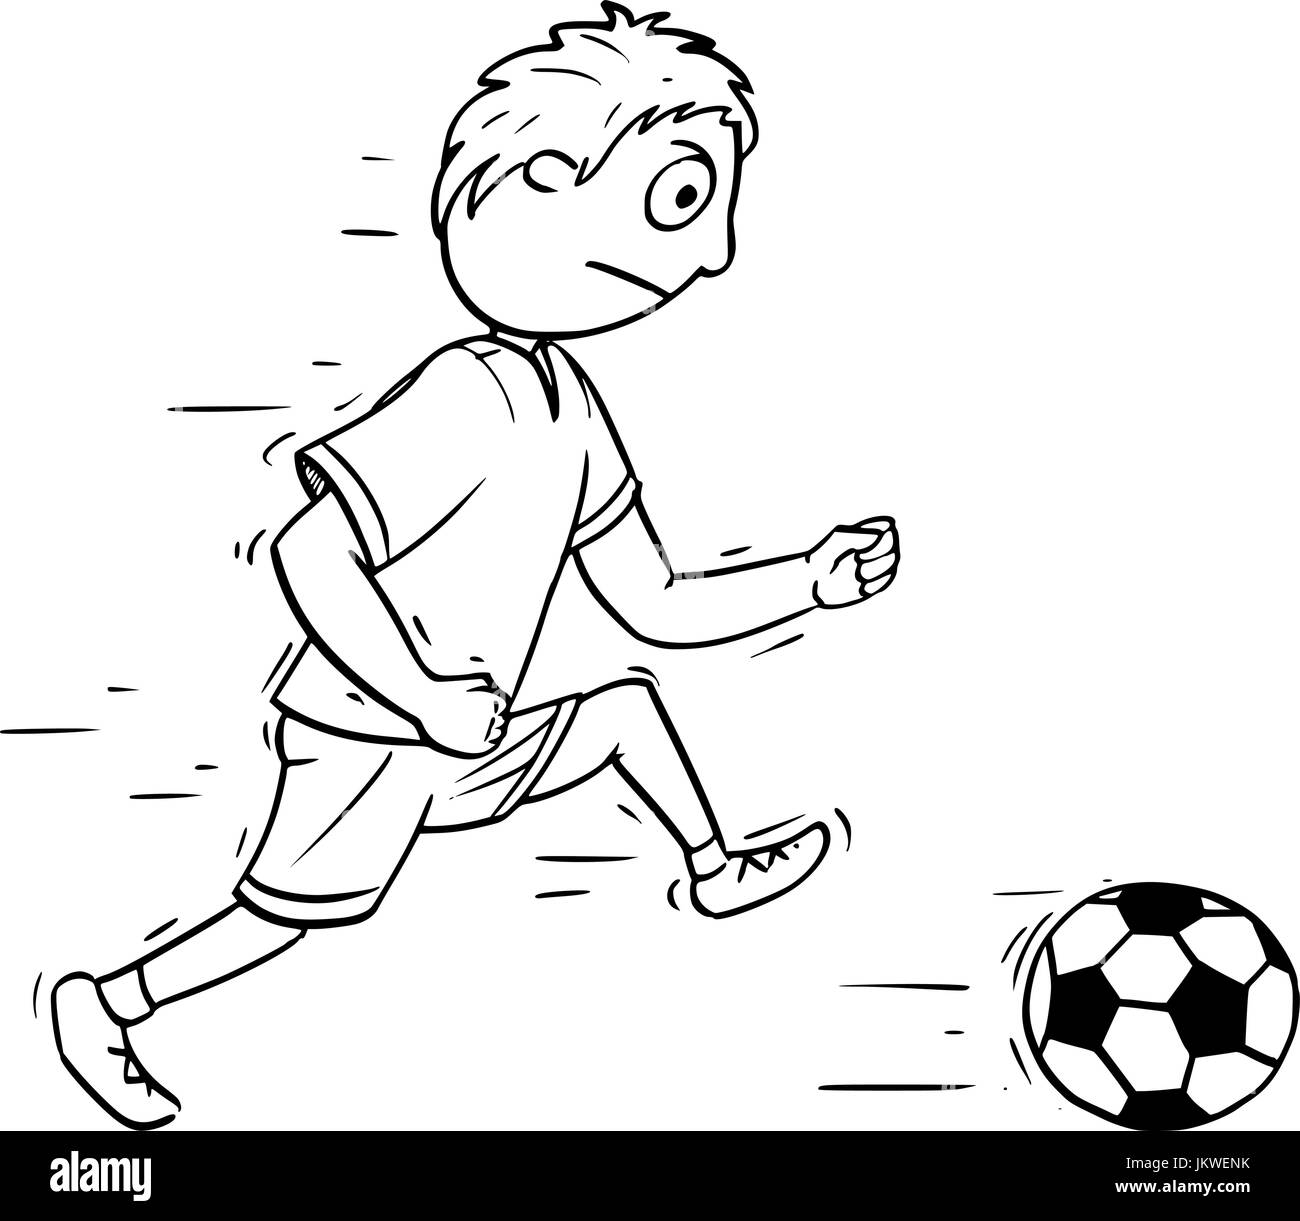 Illustrtaion De Un Niño De Patear La Pelota De Fútbol En Un Fondo Blanco  Ilustraciones svg, vectoriales, clip art vectorizado libre de derechos.  Image 19389608